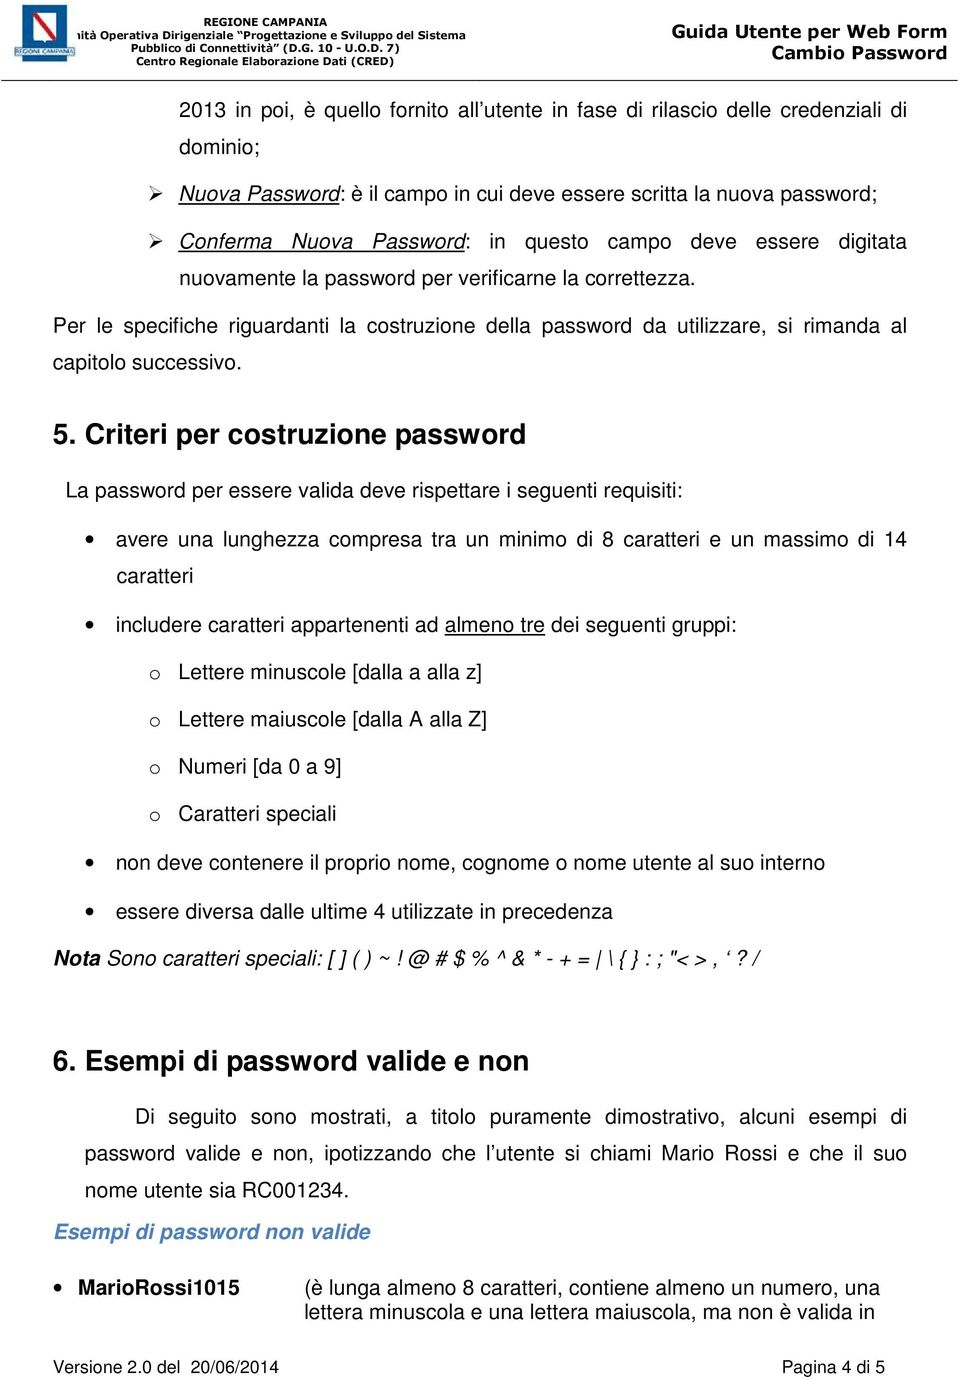 Criteri per costruzione password La password per essere valida deve rispettare i seguenti requisiti: avere una lunghezza compresa tra un minimo di 8 caratteri e un massimo di 14 caratteri includere